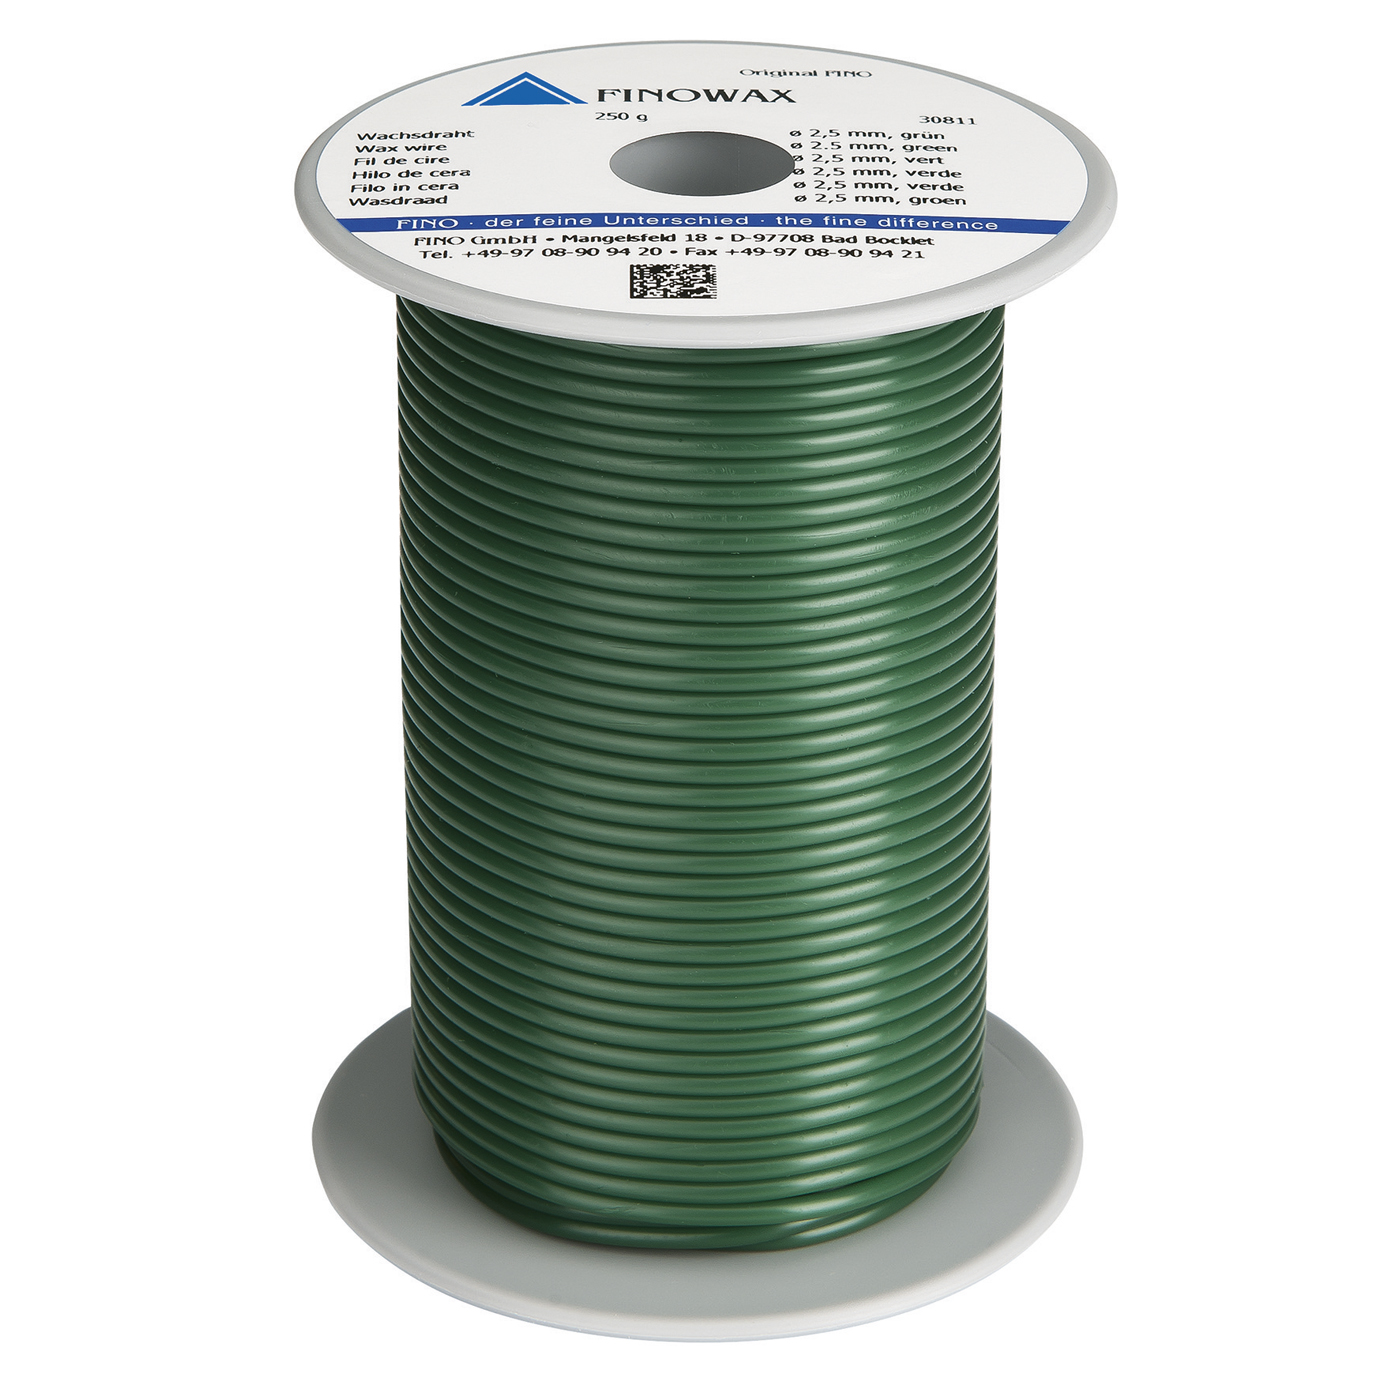 FINOWAX Wax Wire, ø 2.5 mm, Medium Hard, Green - 250 g